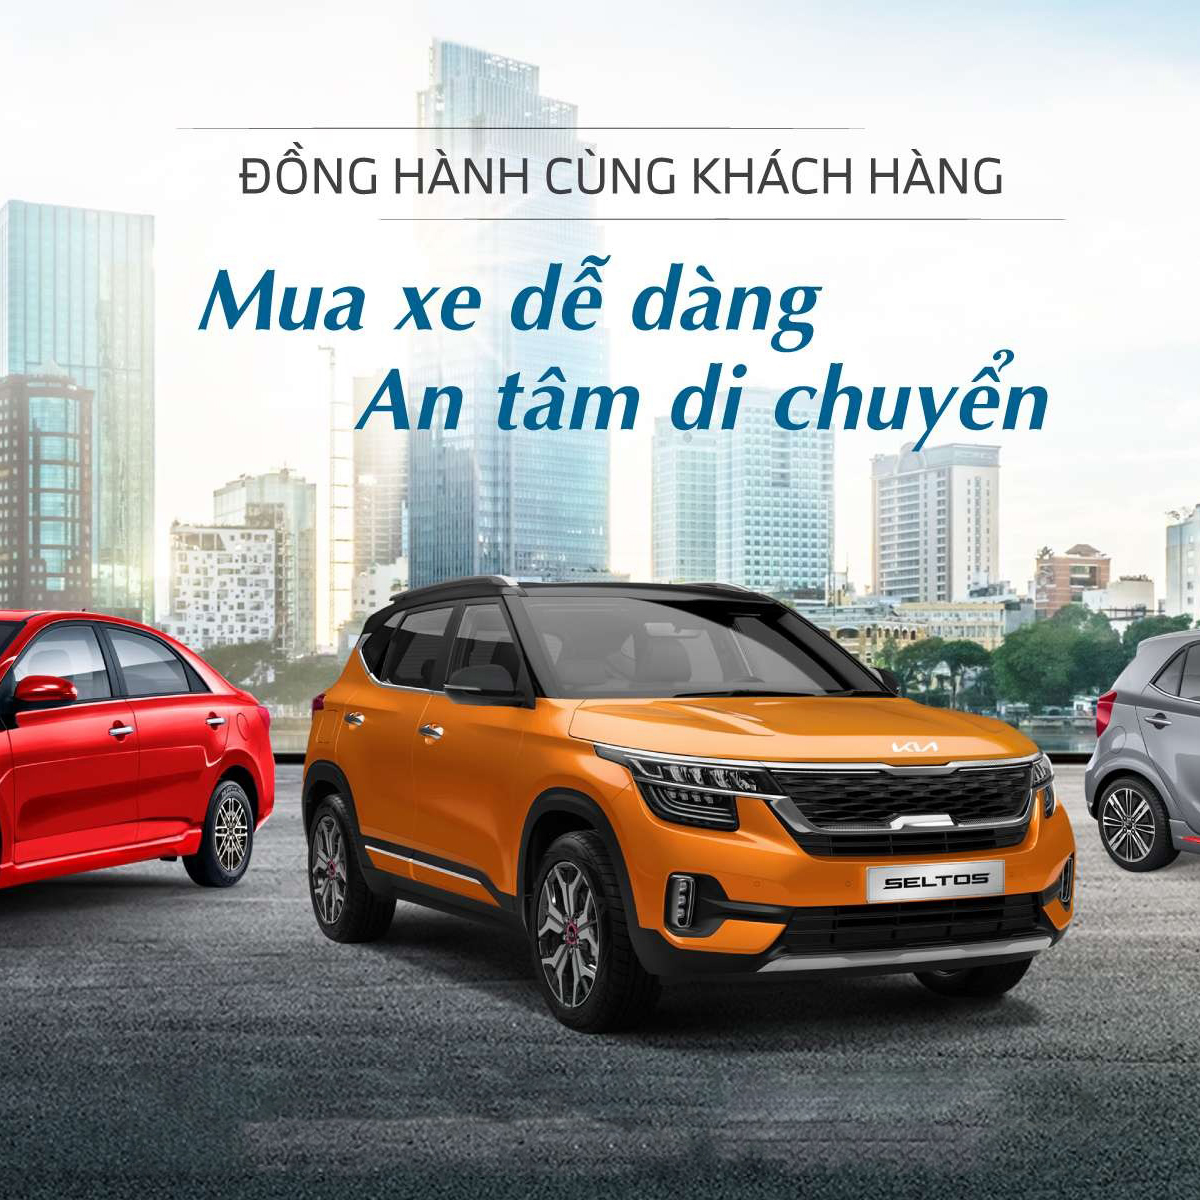 Mua bán xe Kia ở Hà Nội 042023  Bonbanhcom